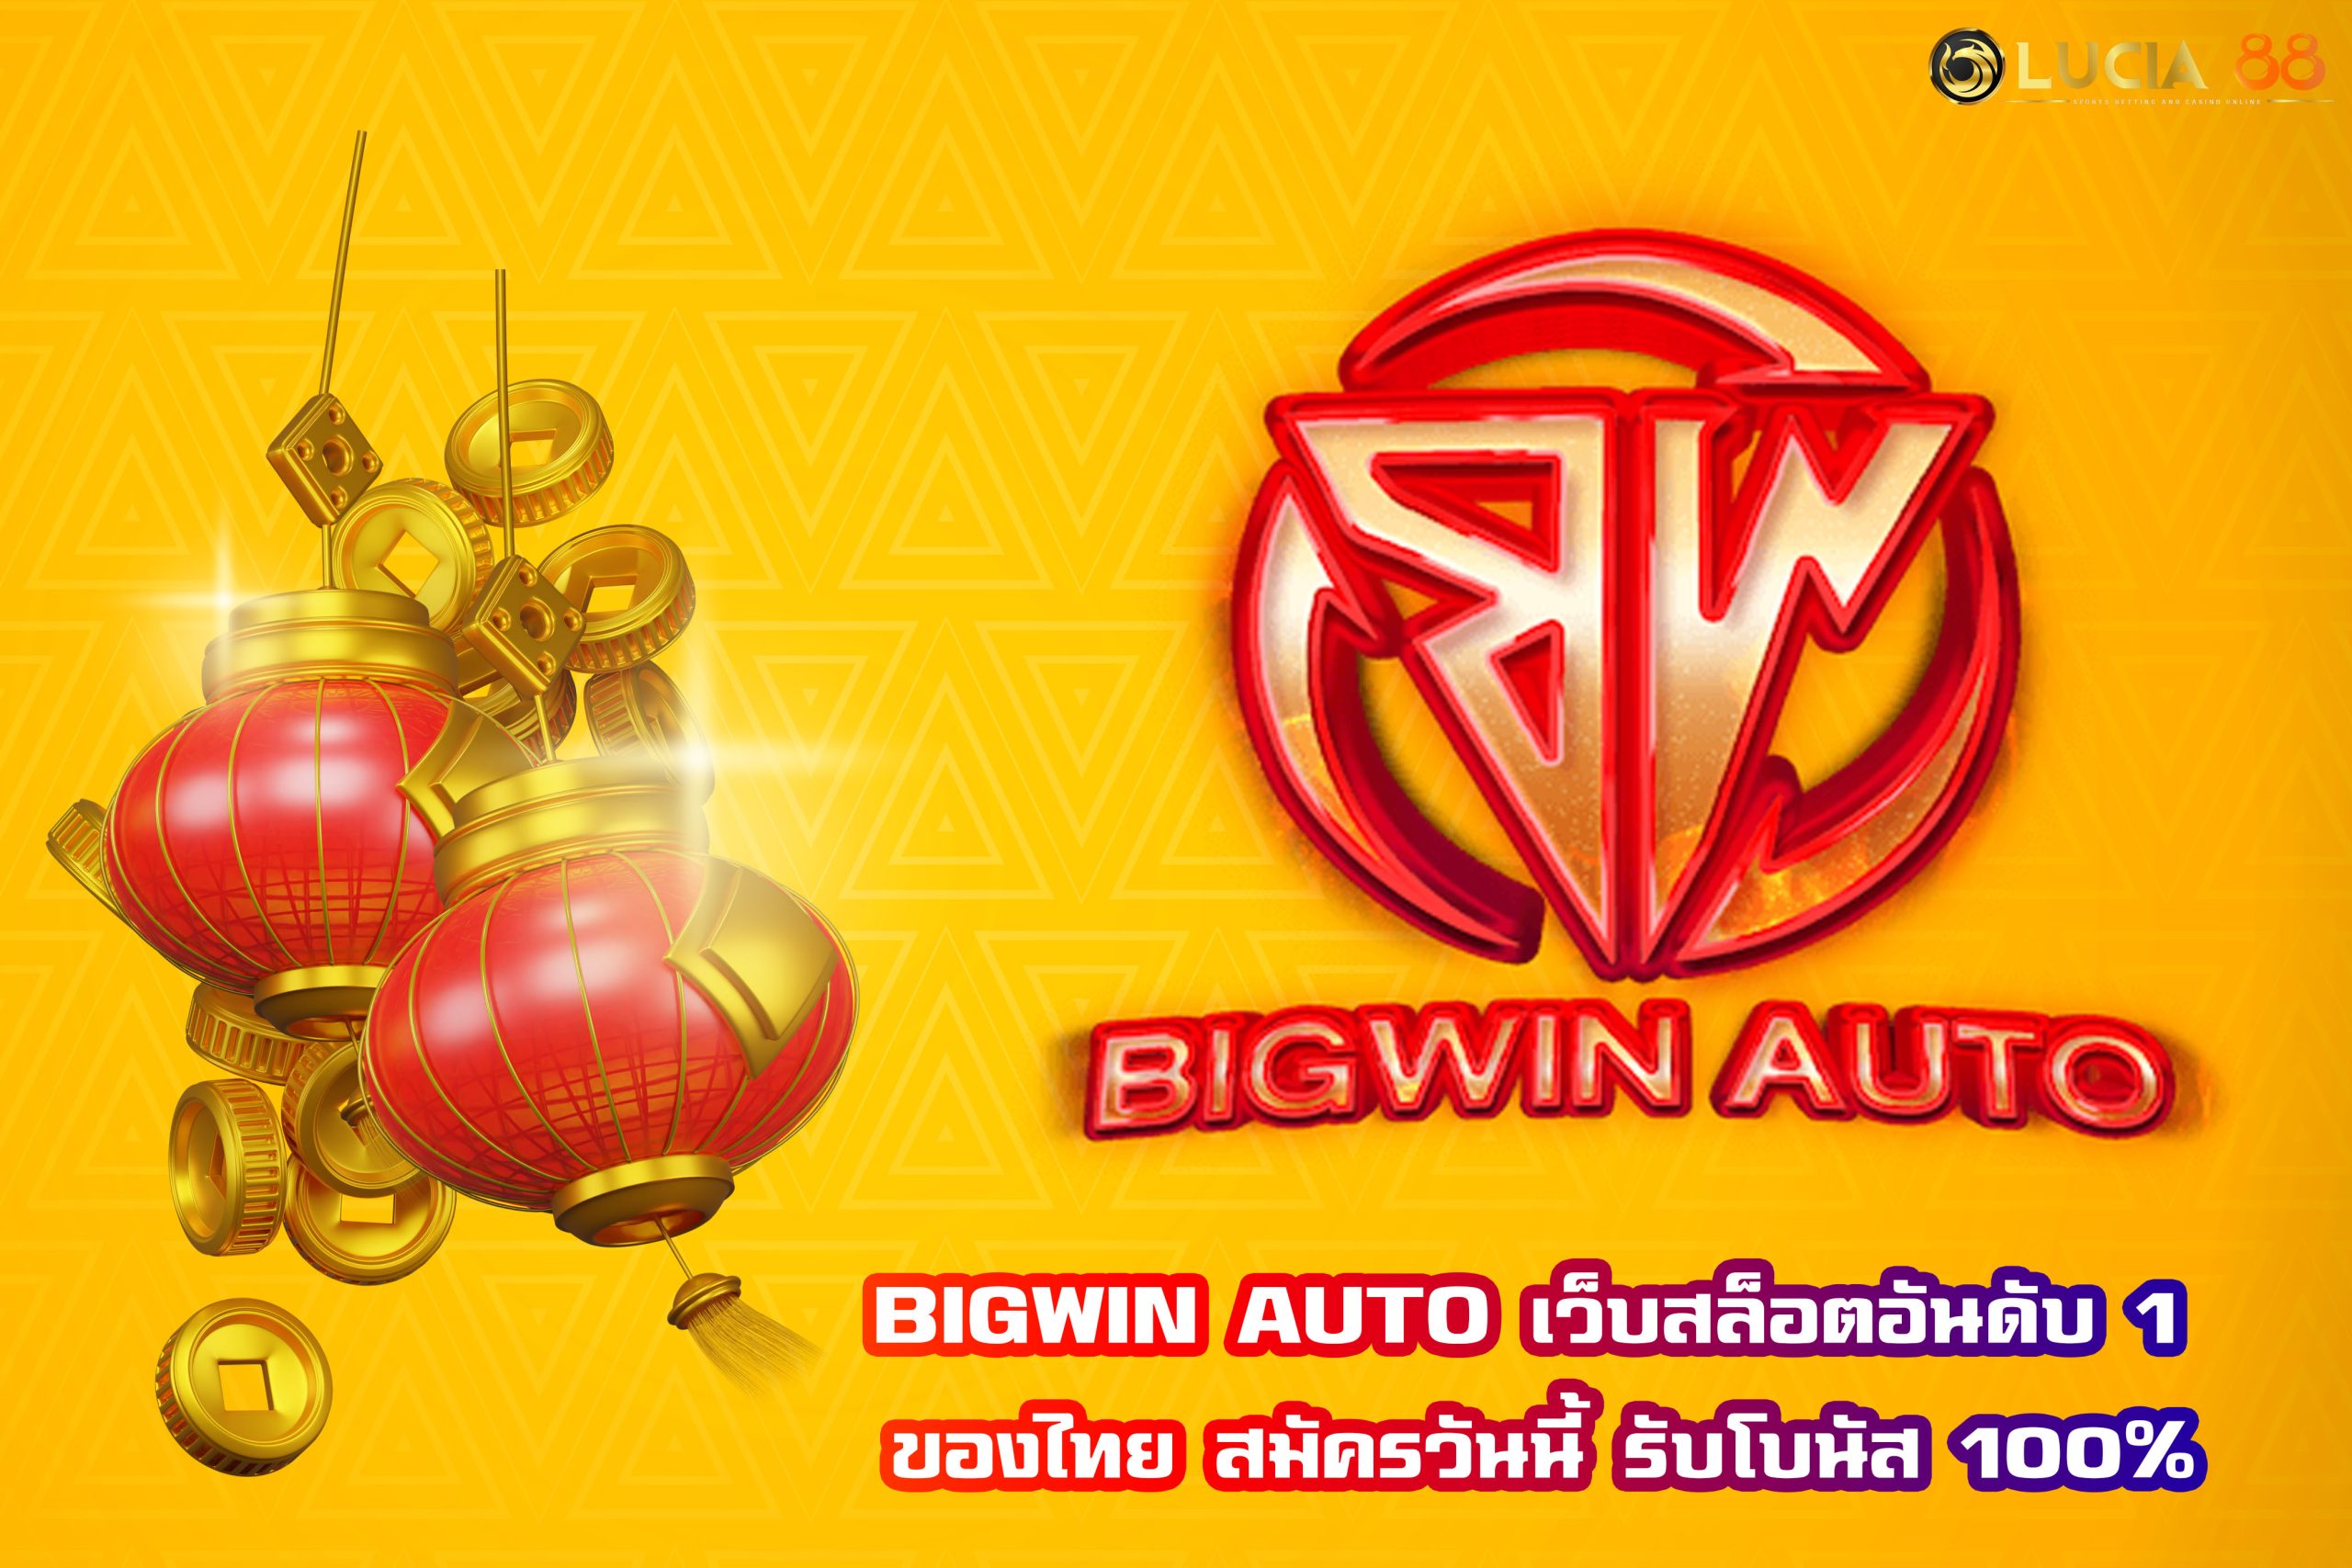 BIGWIN AUTO เว็บสล็อตอันดับ 1 ของไทย สมัครวันนี้ รับโบนัส 100%